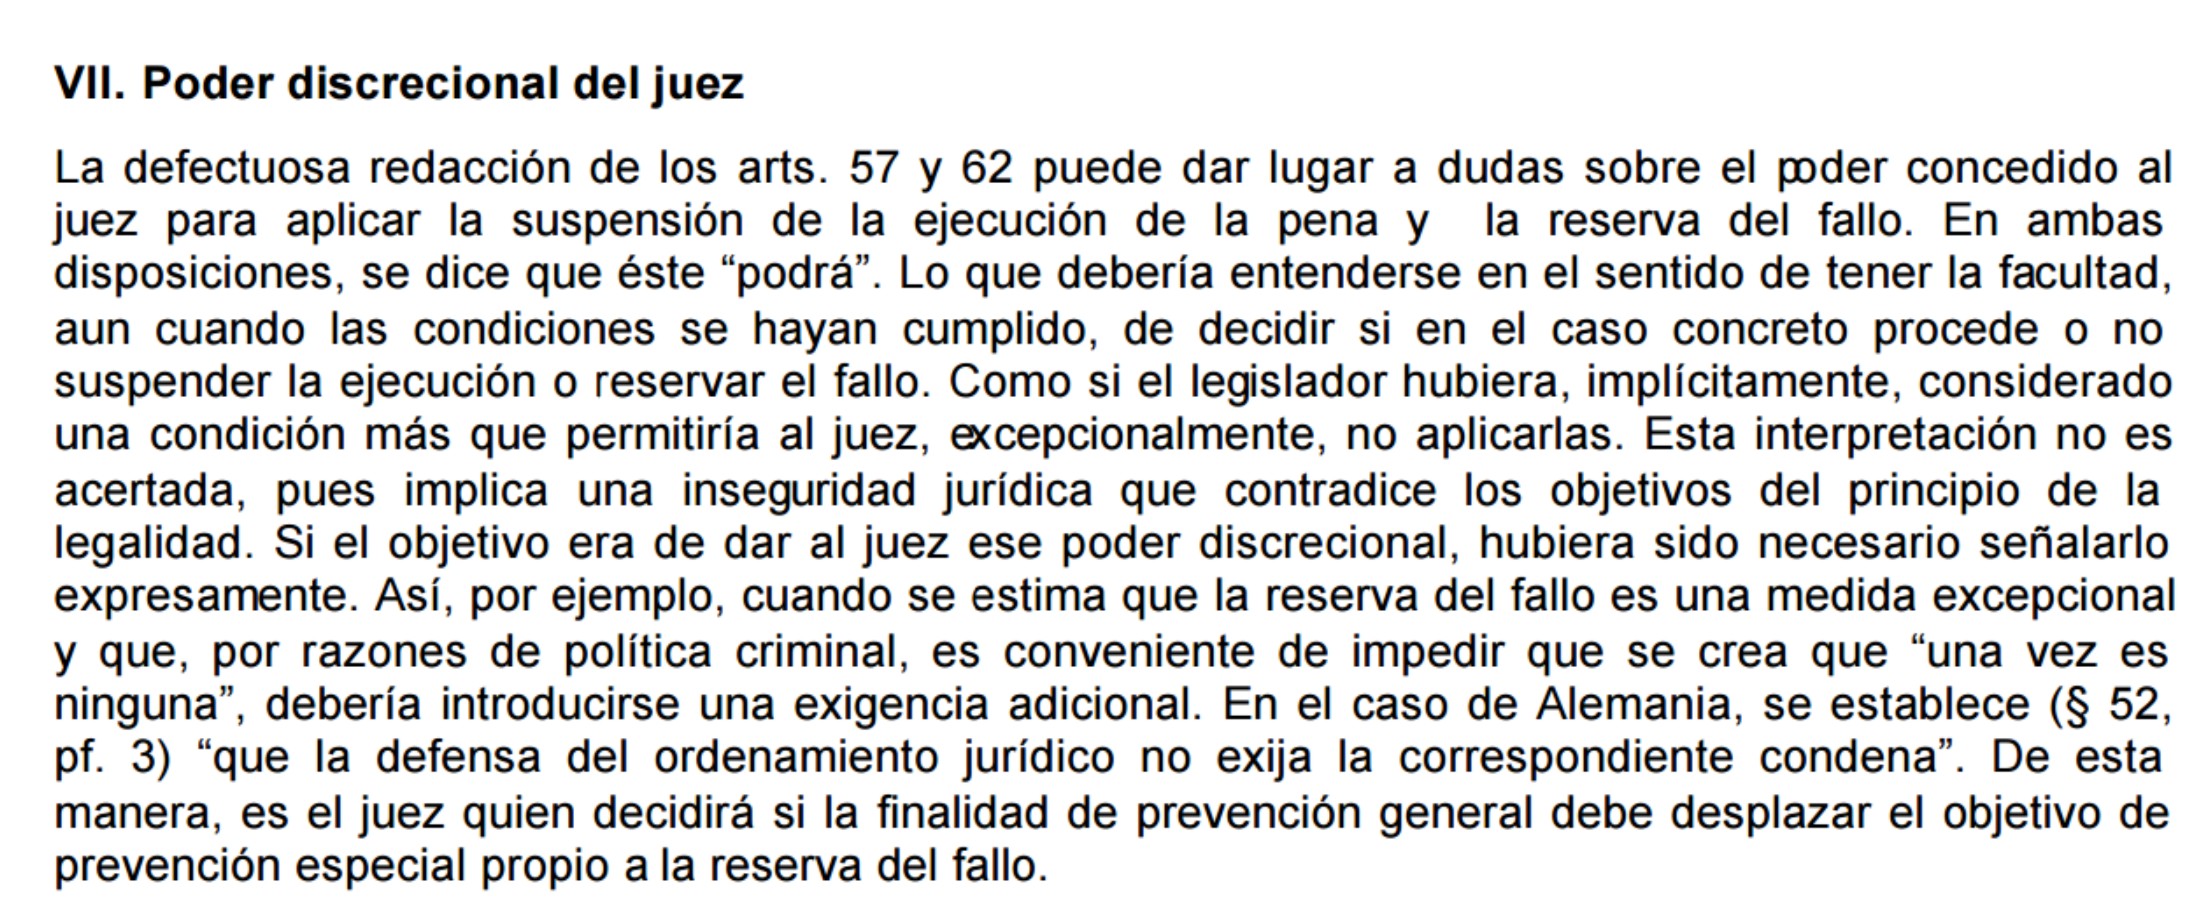 Texto original del profesor Jose Hurtado Pozo